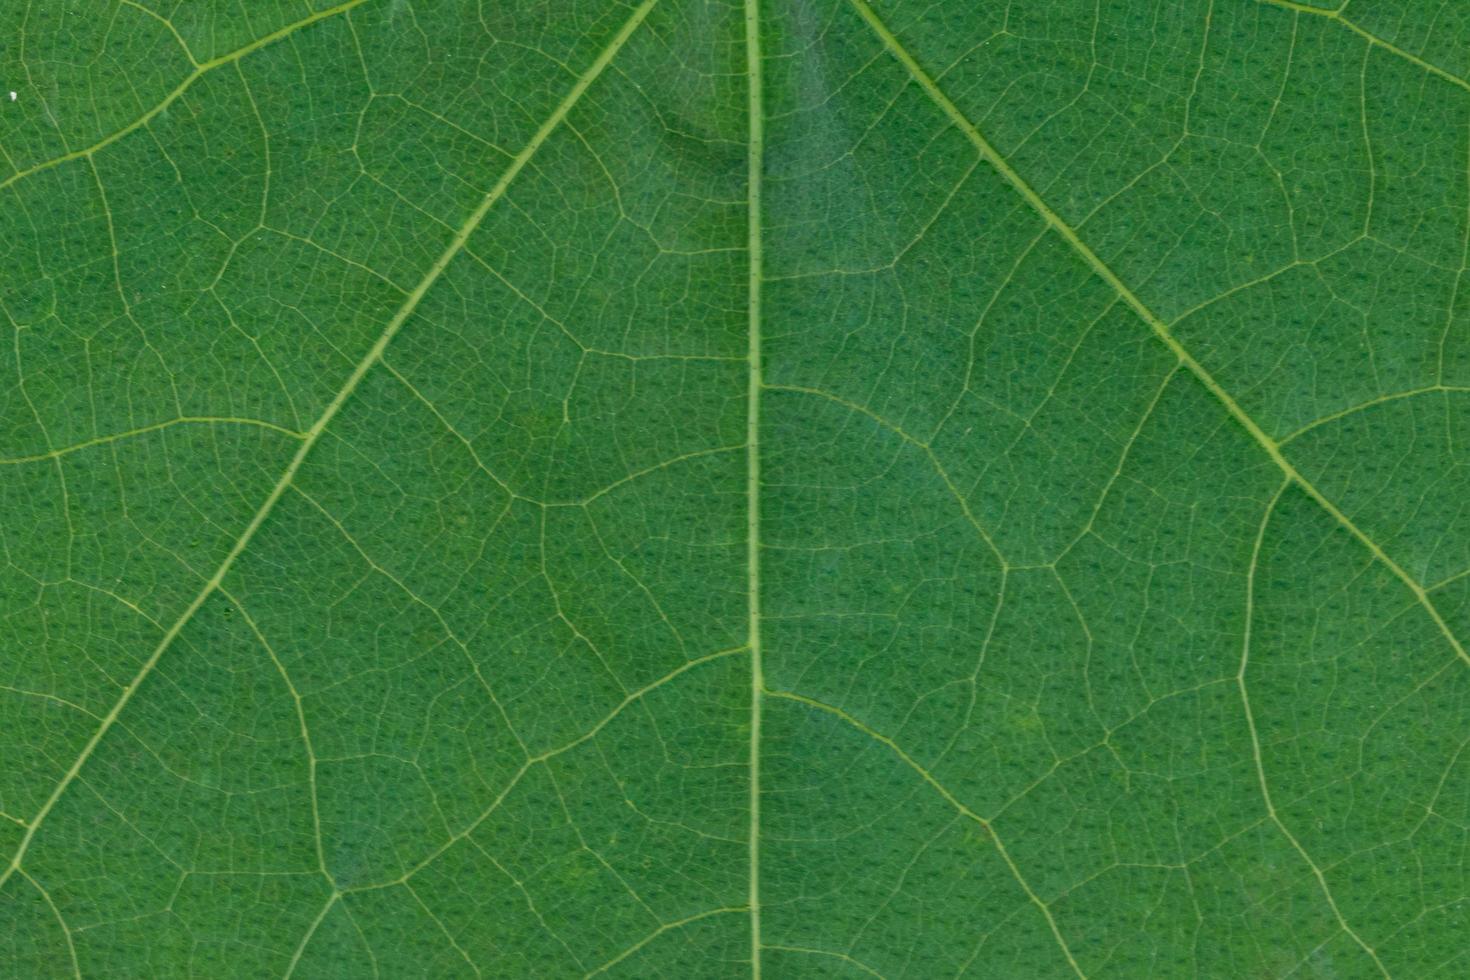 folha verde, foto close-up